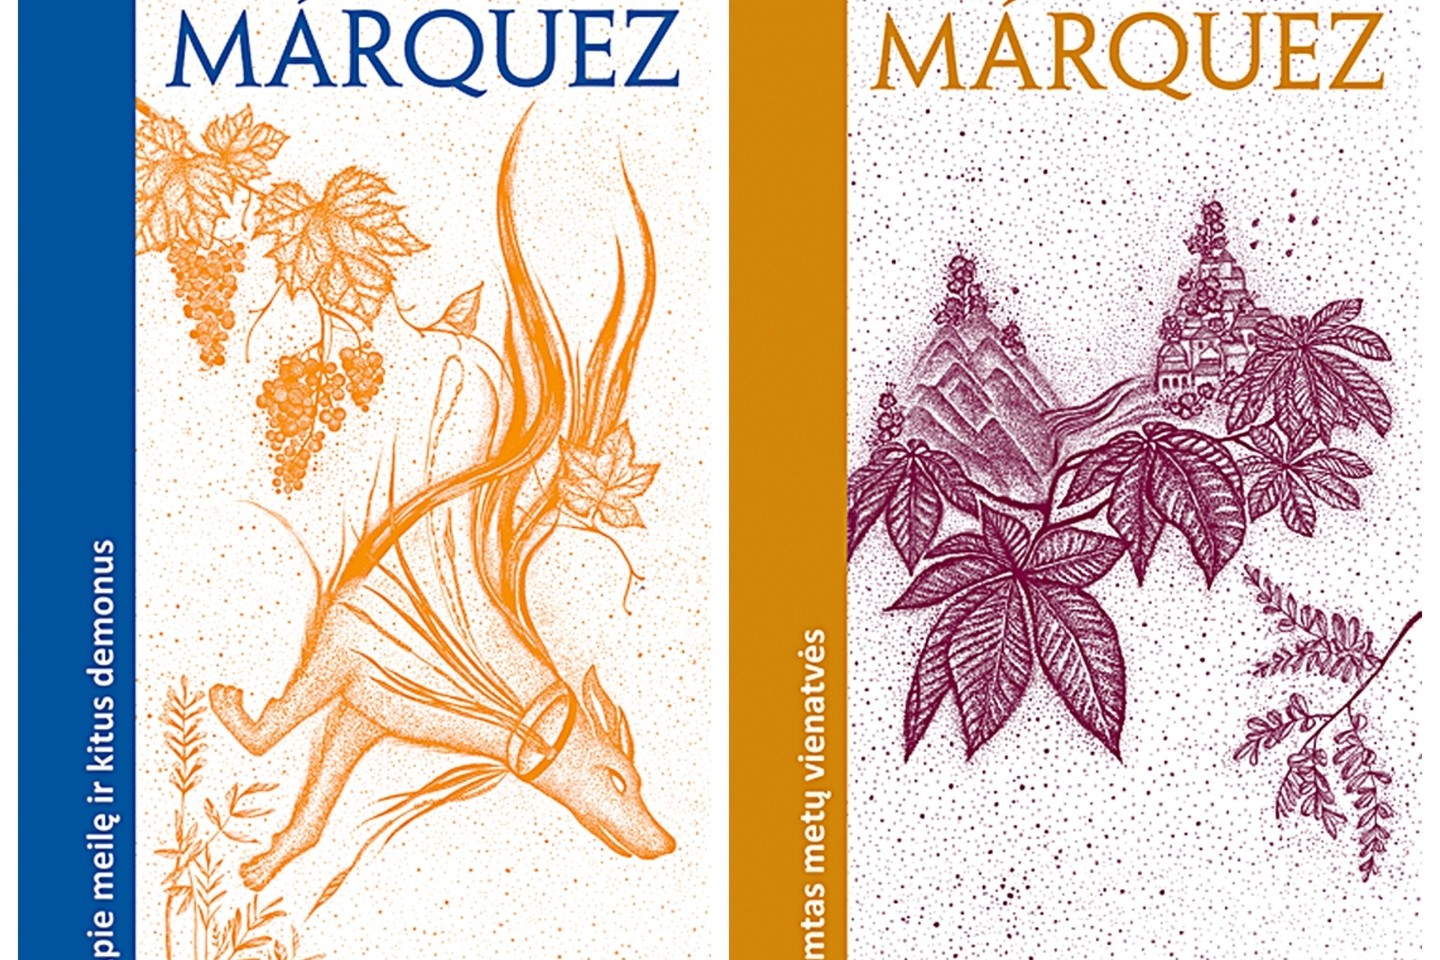 Naujausią G.Garcios Marquezo knygų seriją apipavidalino J.Brukštutė.